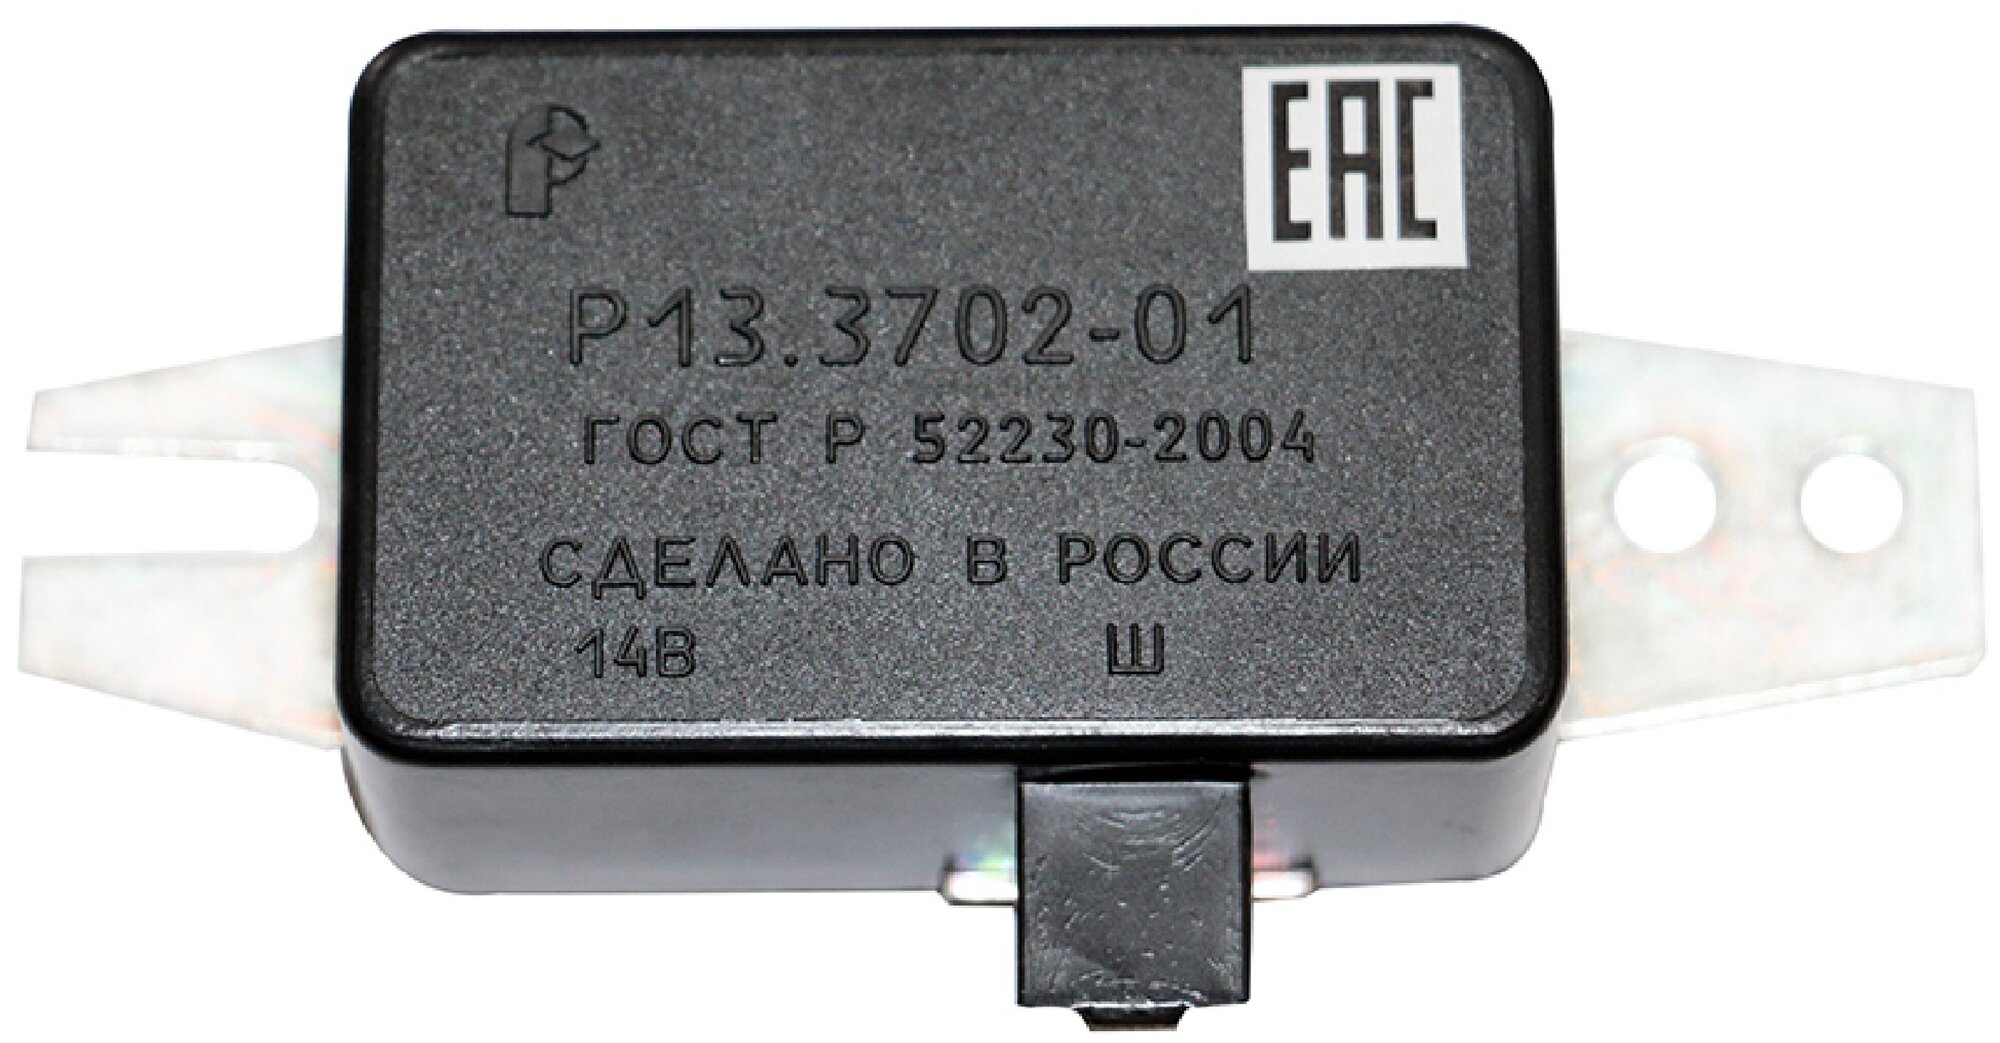 Регулятор напряжения для ГАЗ 24 2410 2412 5294 5392 3102 33 52 53 РАФ 2203-01 и модификации.